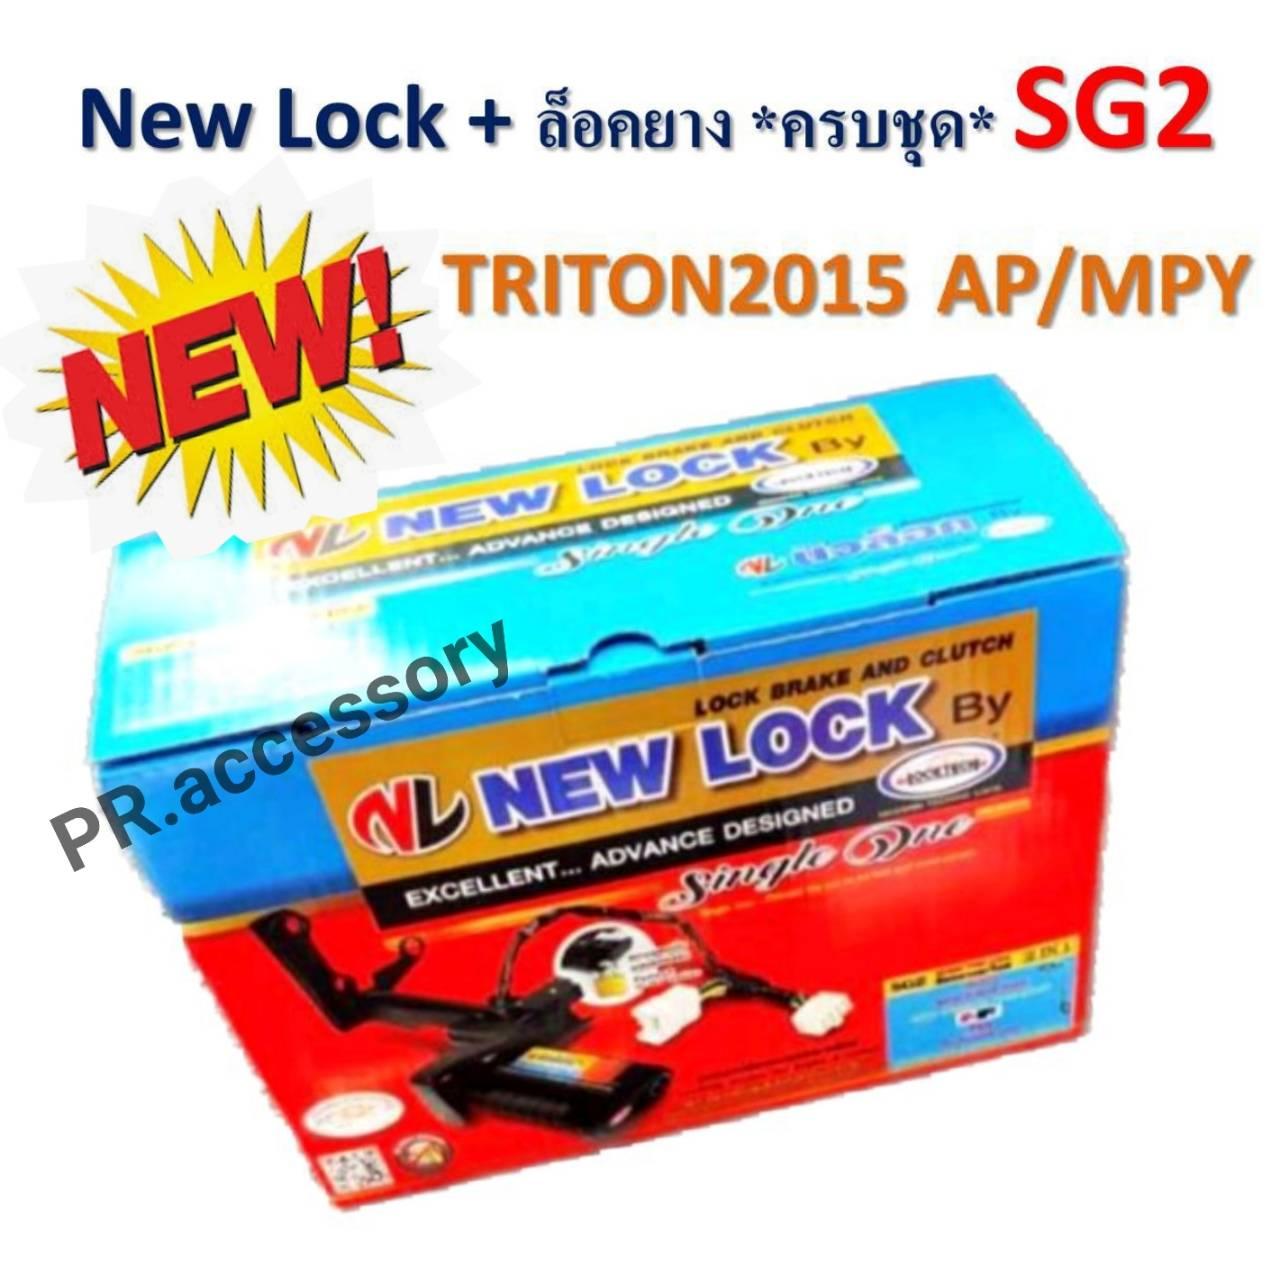 New Lock + ล็อคยางอะไหล่ ระบบกุญแจ ความปลอดภัยสูง SG2 TRITON 2015 AP/MPY